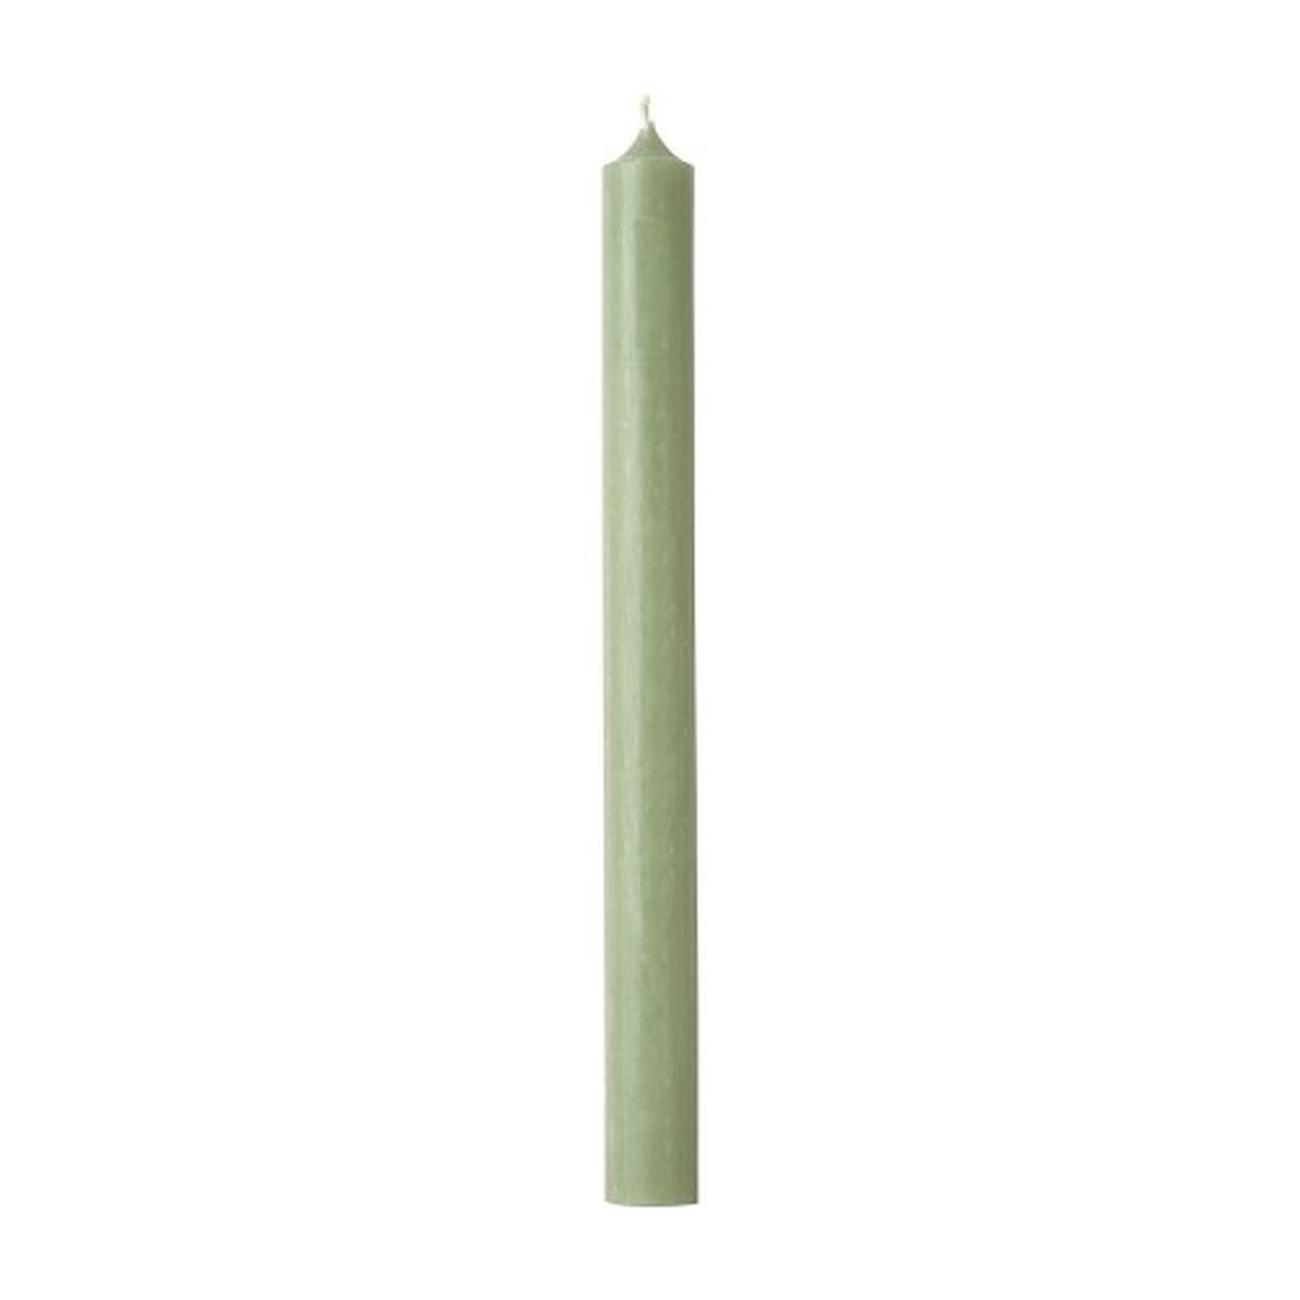 ihr-cylinder-candle-dark-sage - IHR Cylinder Candle Dark Sage 